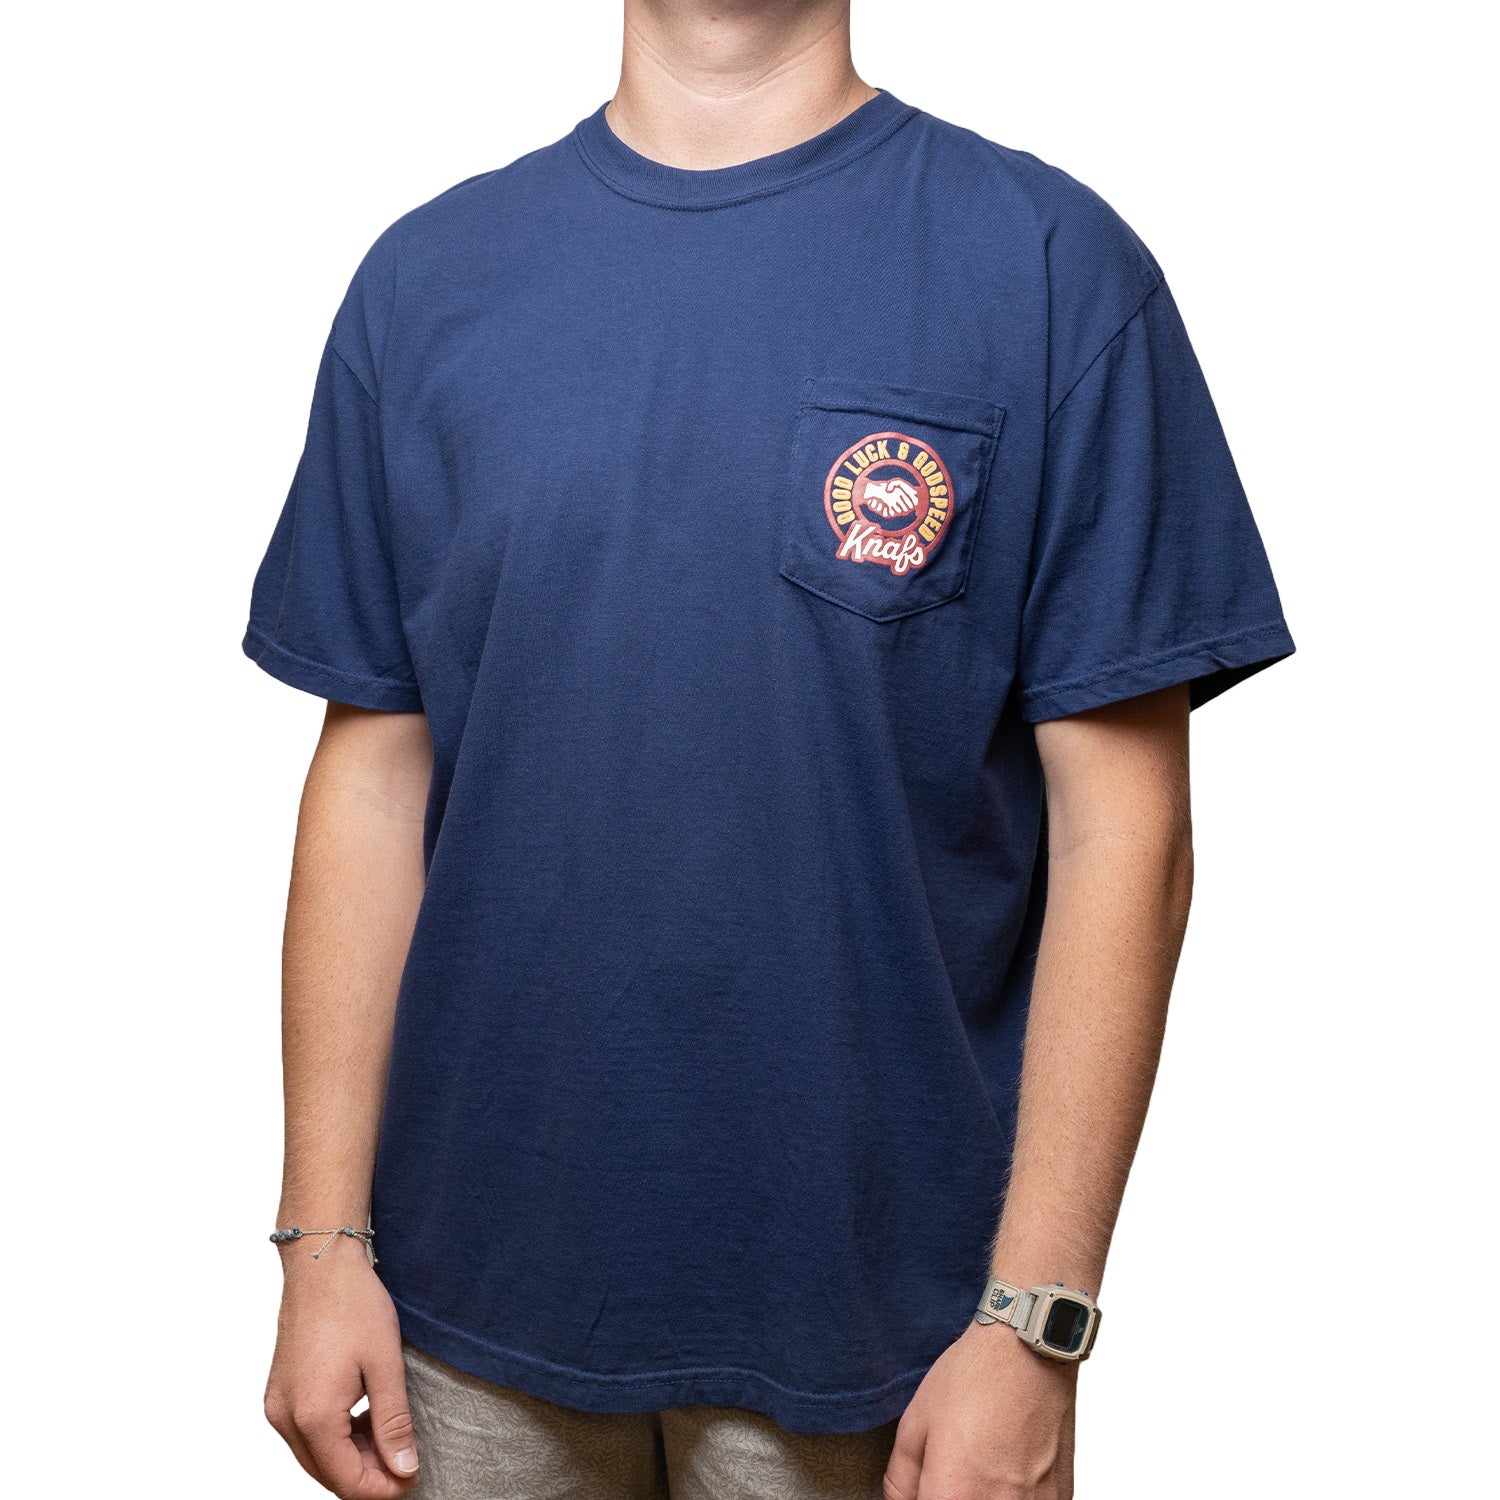 Knafs Pocket T-Shirt - Good Luck & Godspeed - Navy